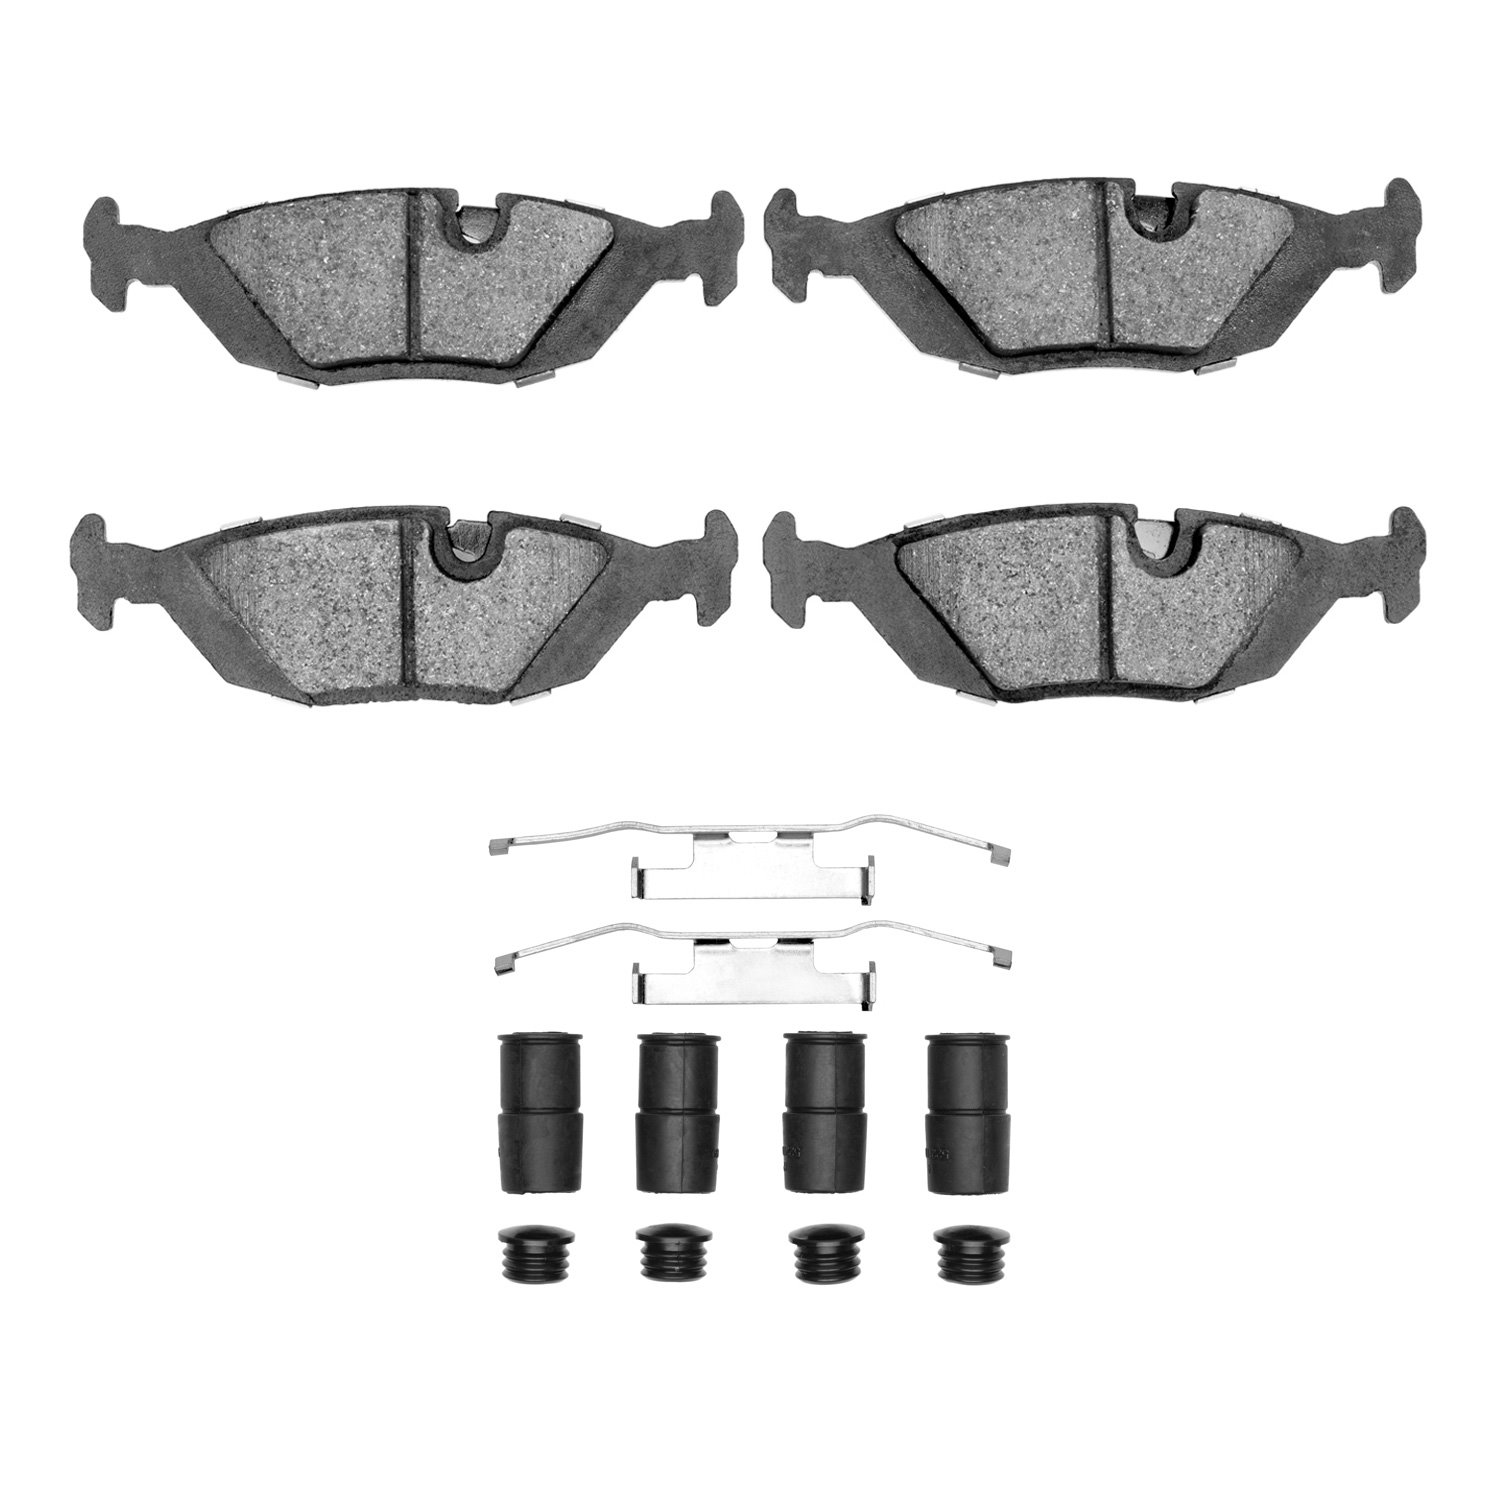 1310-0279-01 3000-Series Ceramic Brake Pads & Hardware Kit, 1981-1991 BMW, Position: Rear